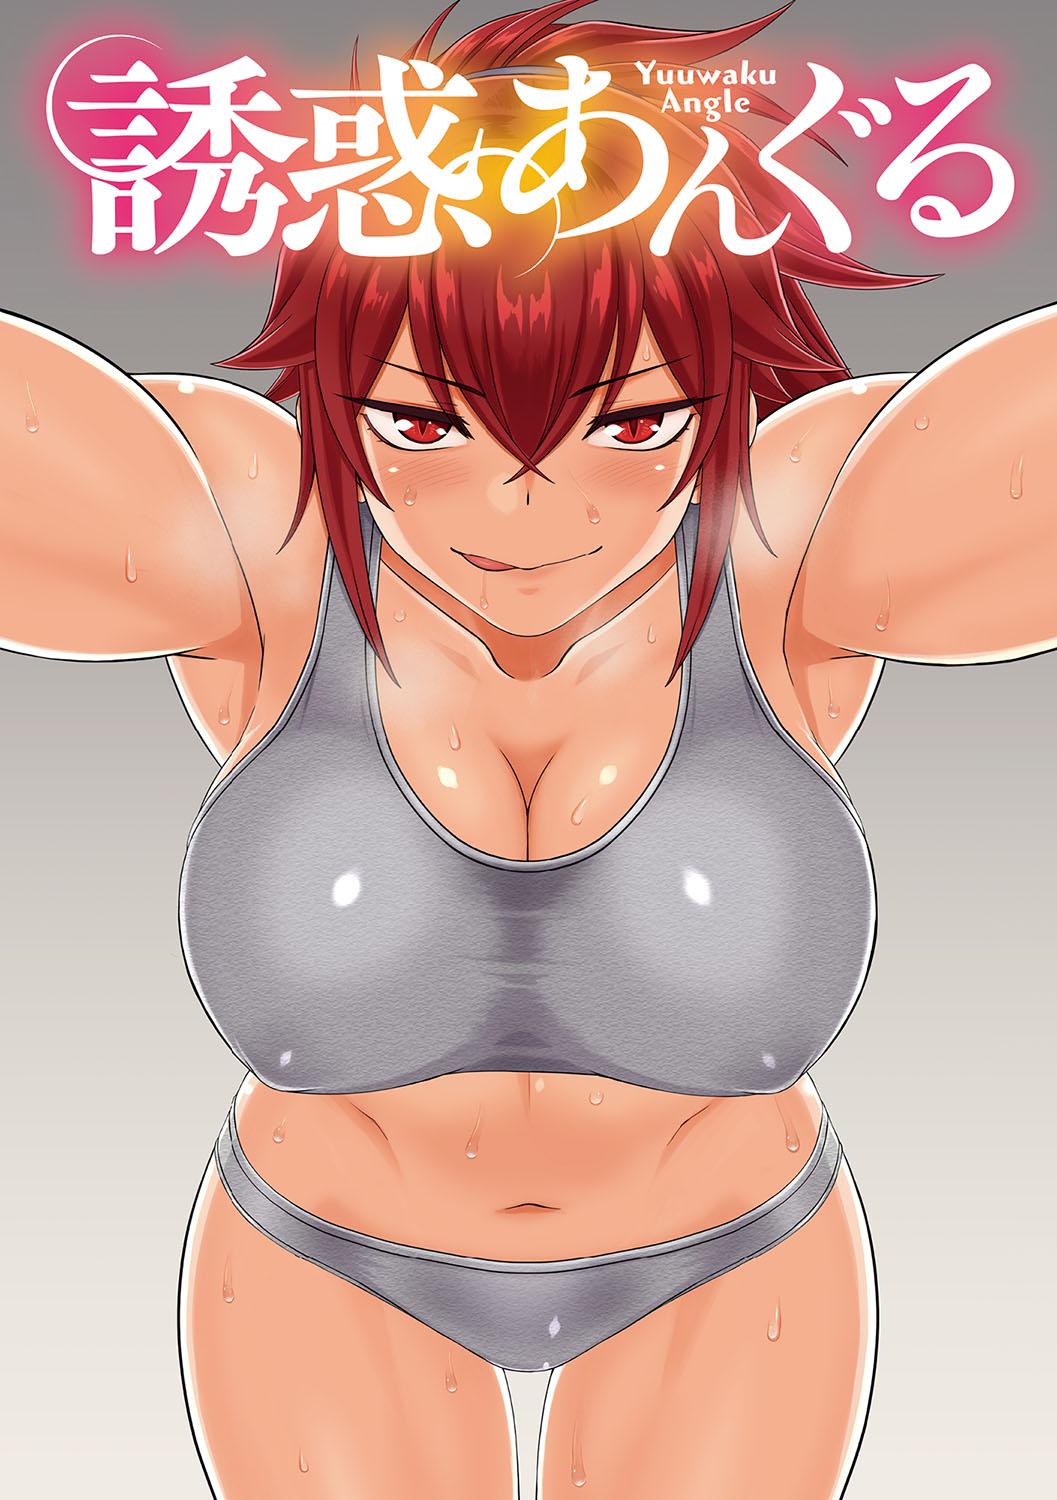 Hot Yuuwaku Angle Hardsex - Picture 2